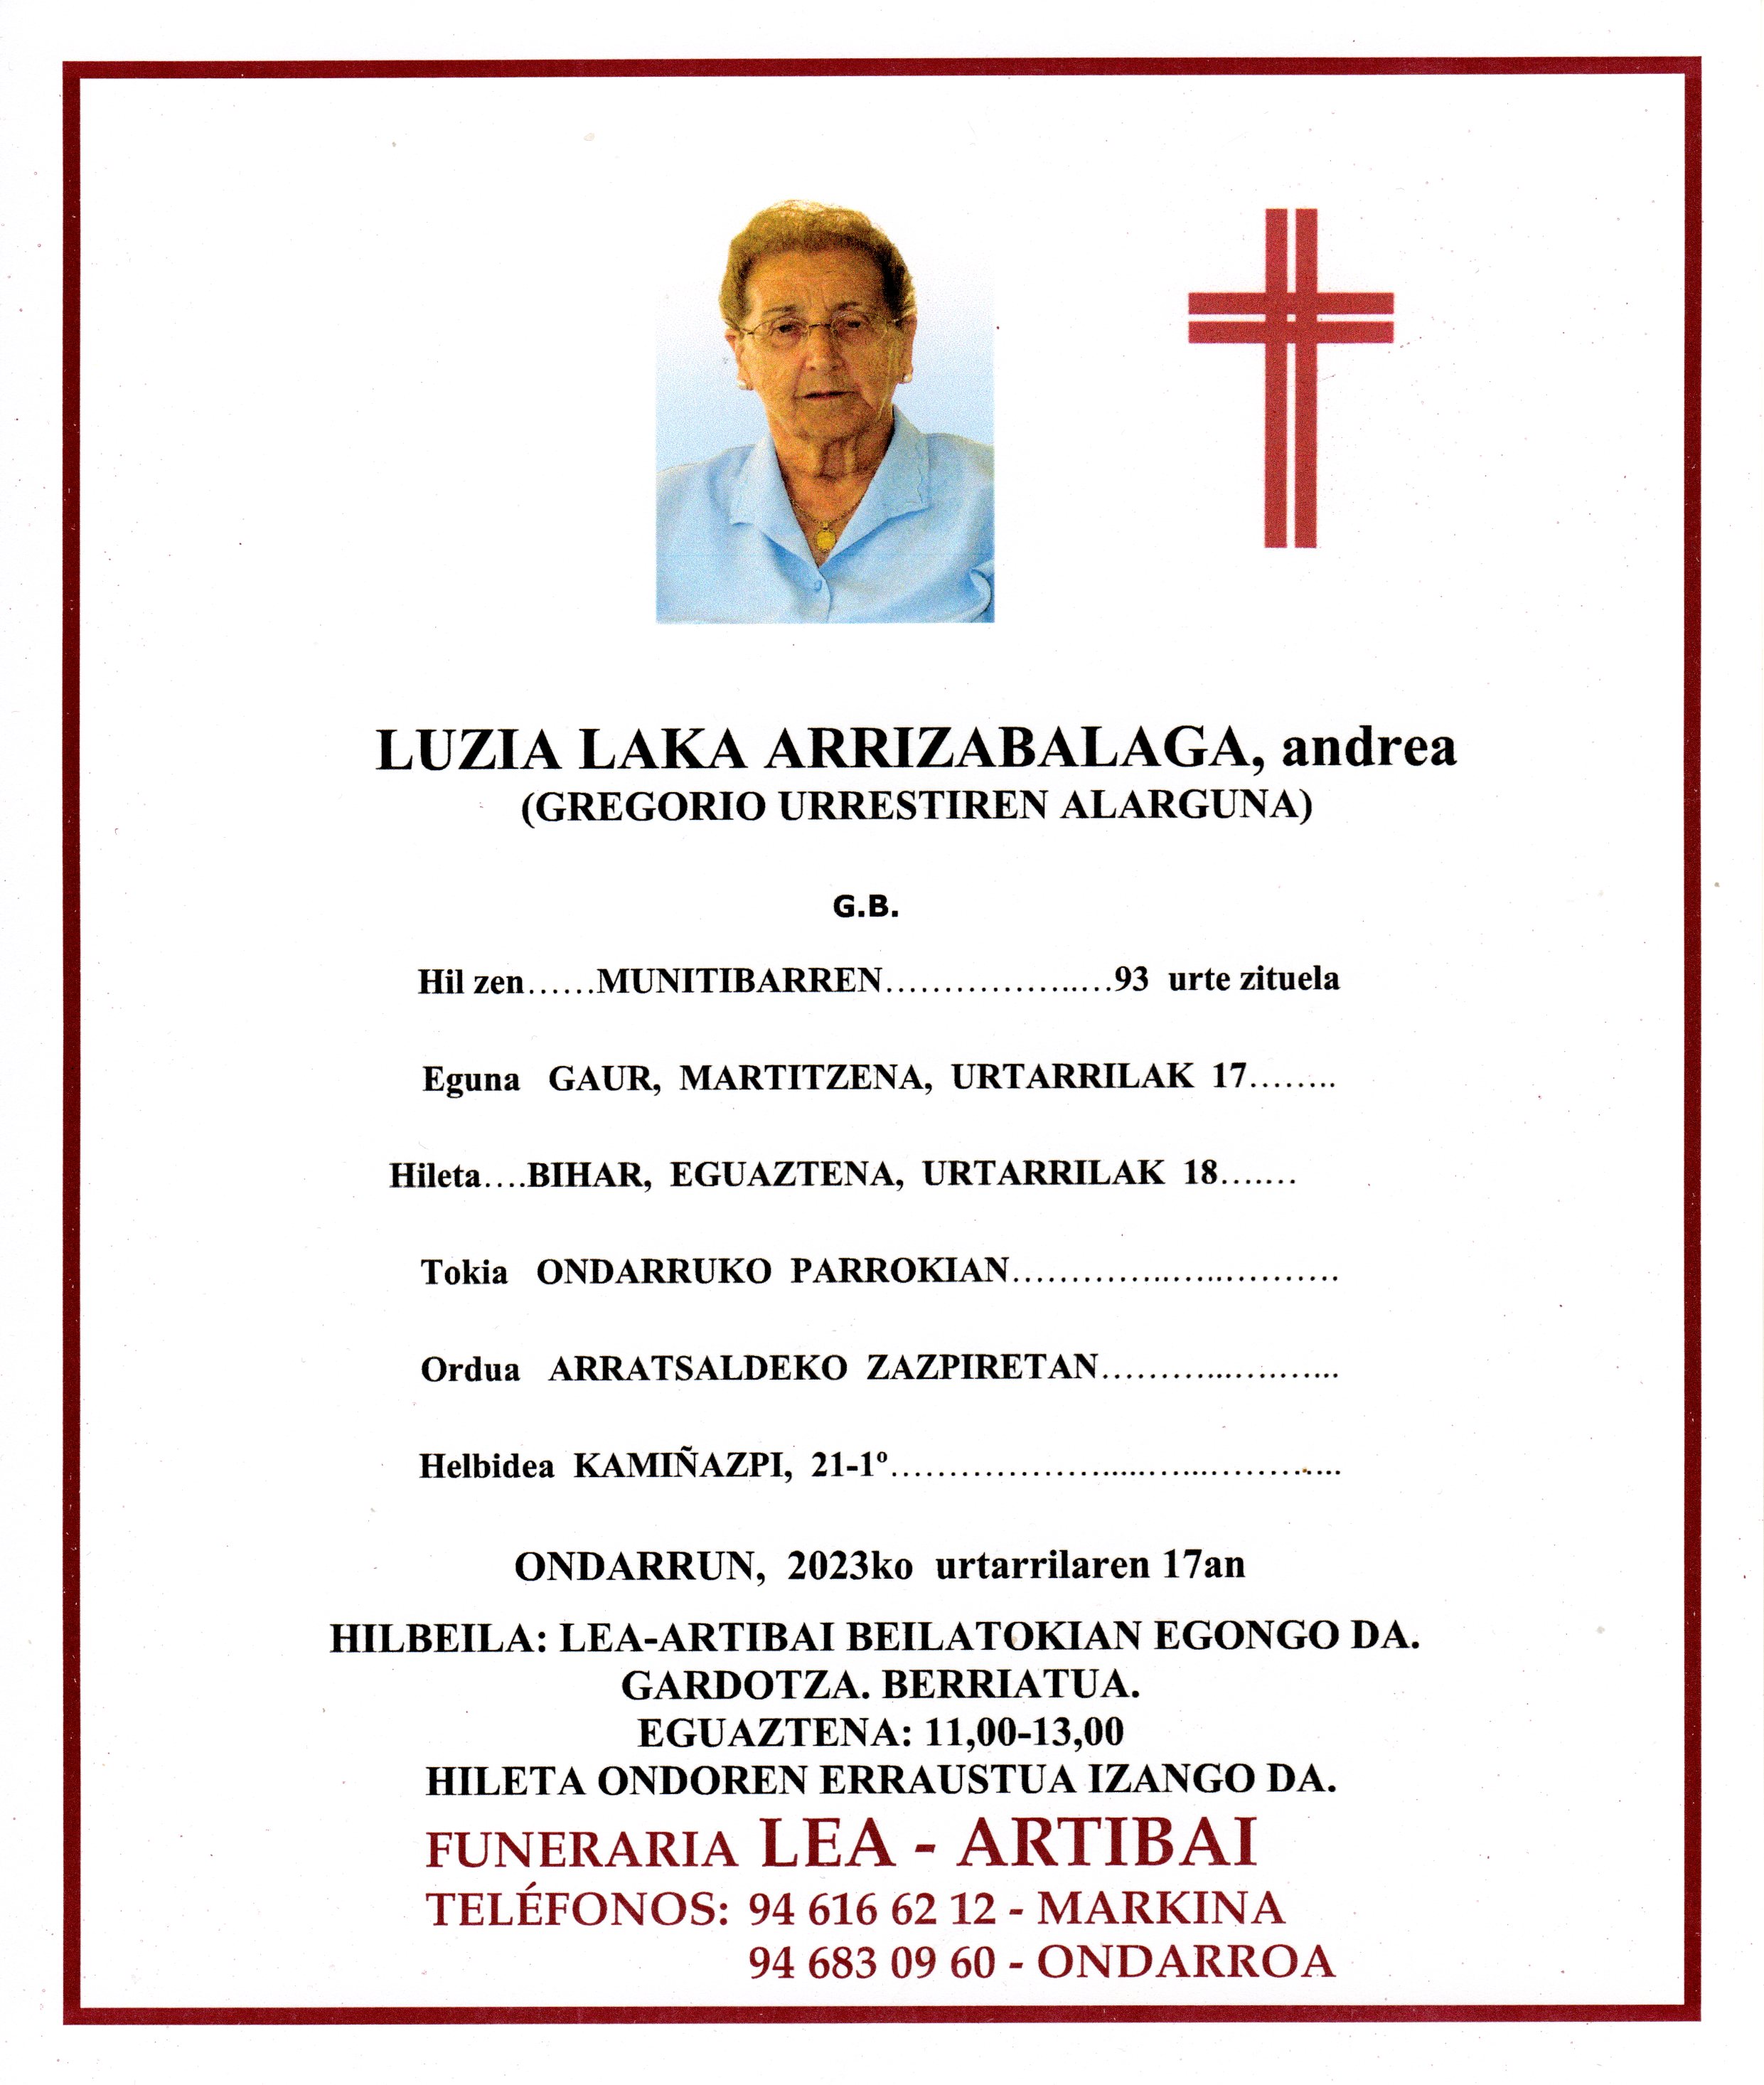 Luzia Laka Arrizabalaga